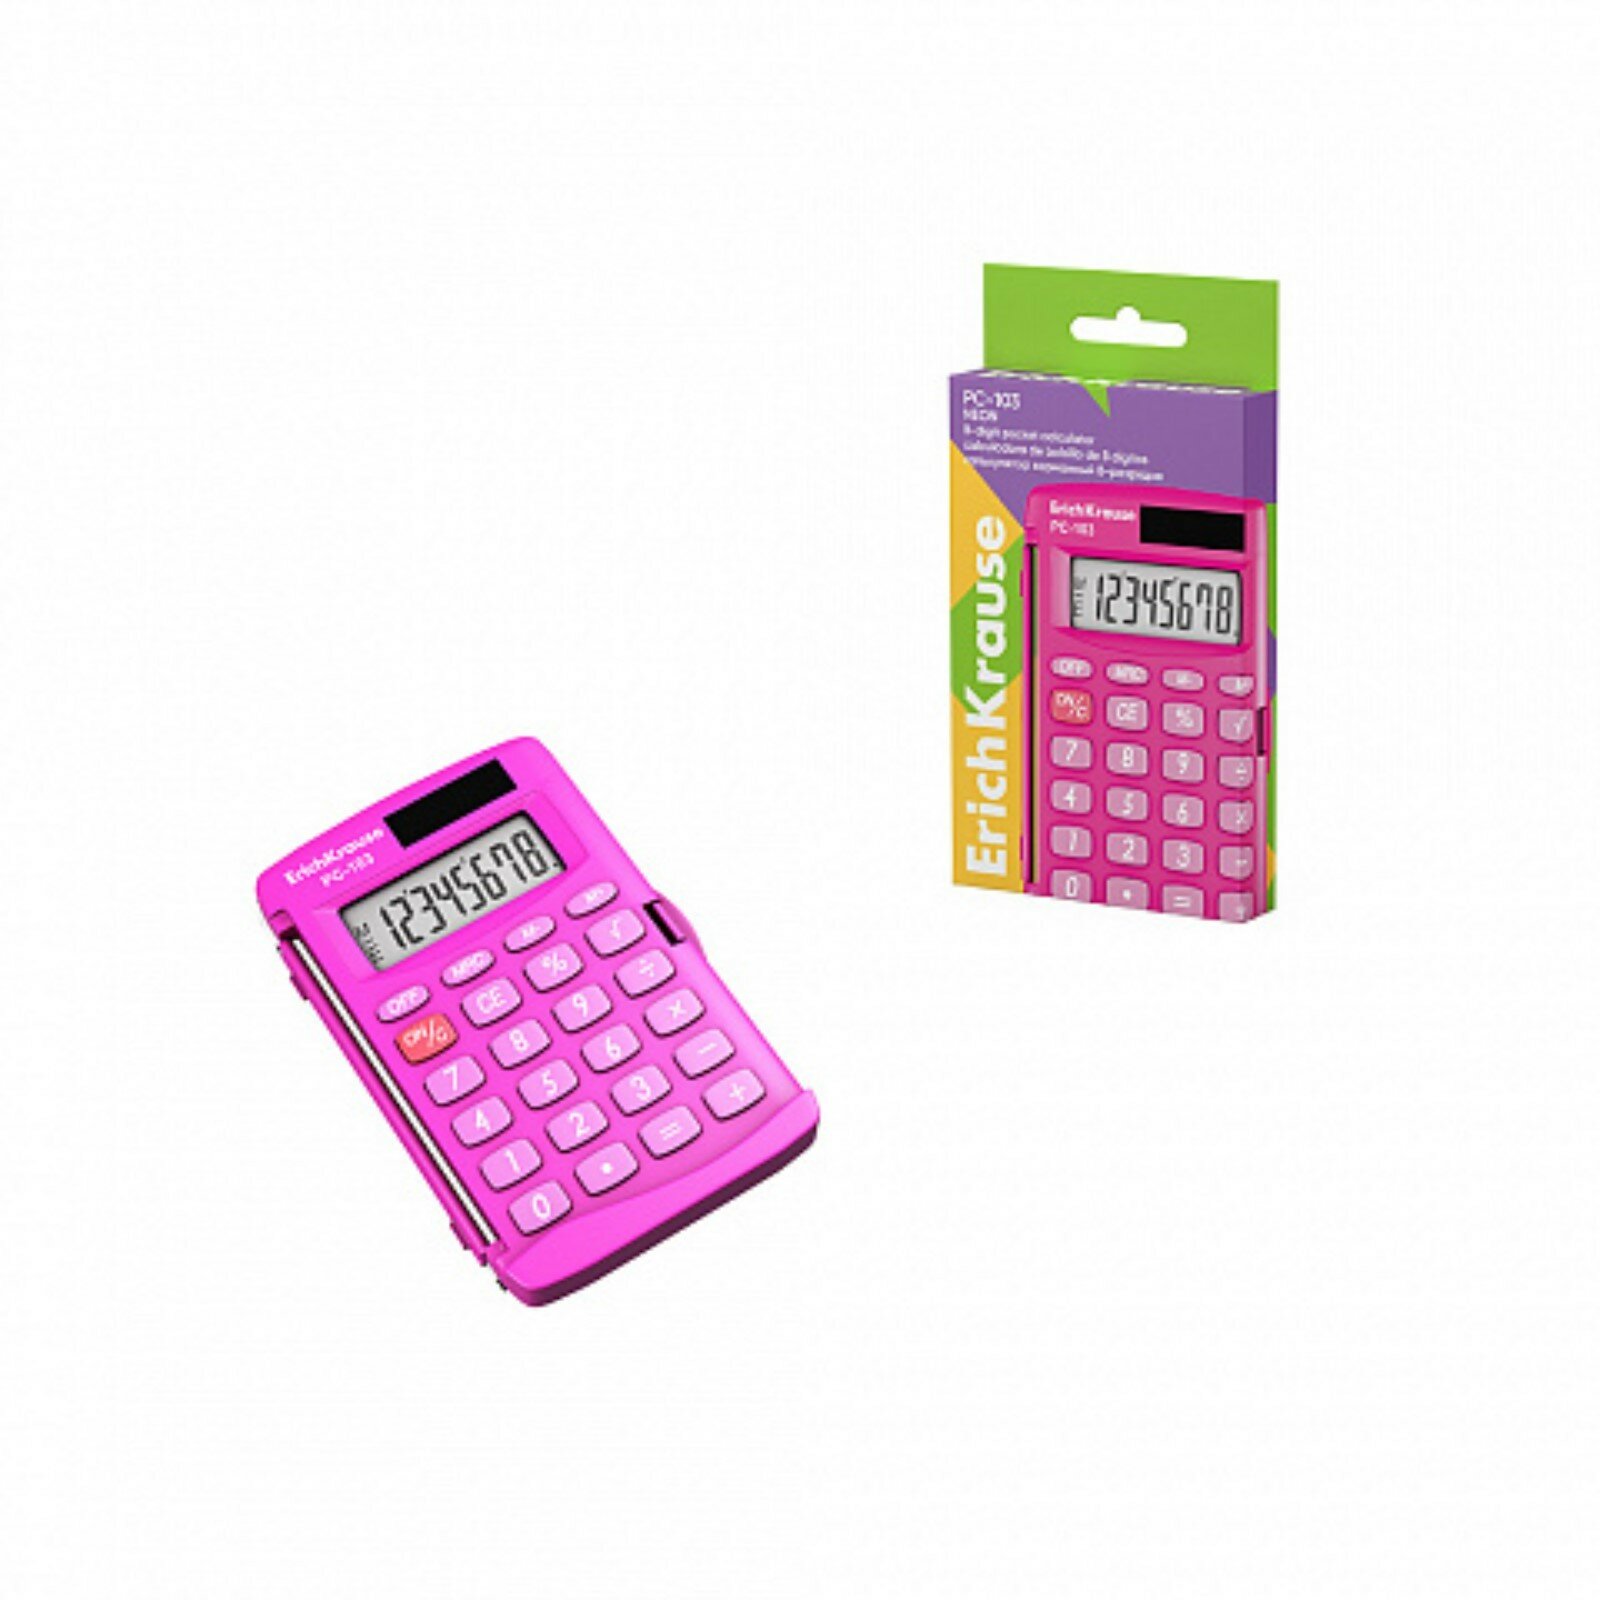 Калькулятор карманный 8-разрядов PC-103 Neon розовый (в коробке по 1 шт.)